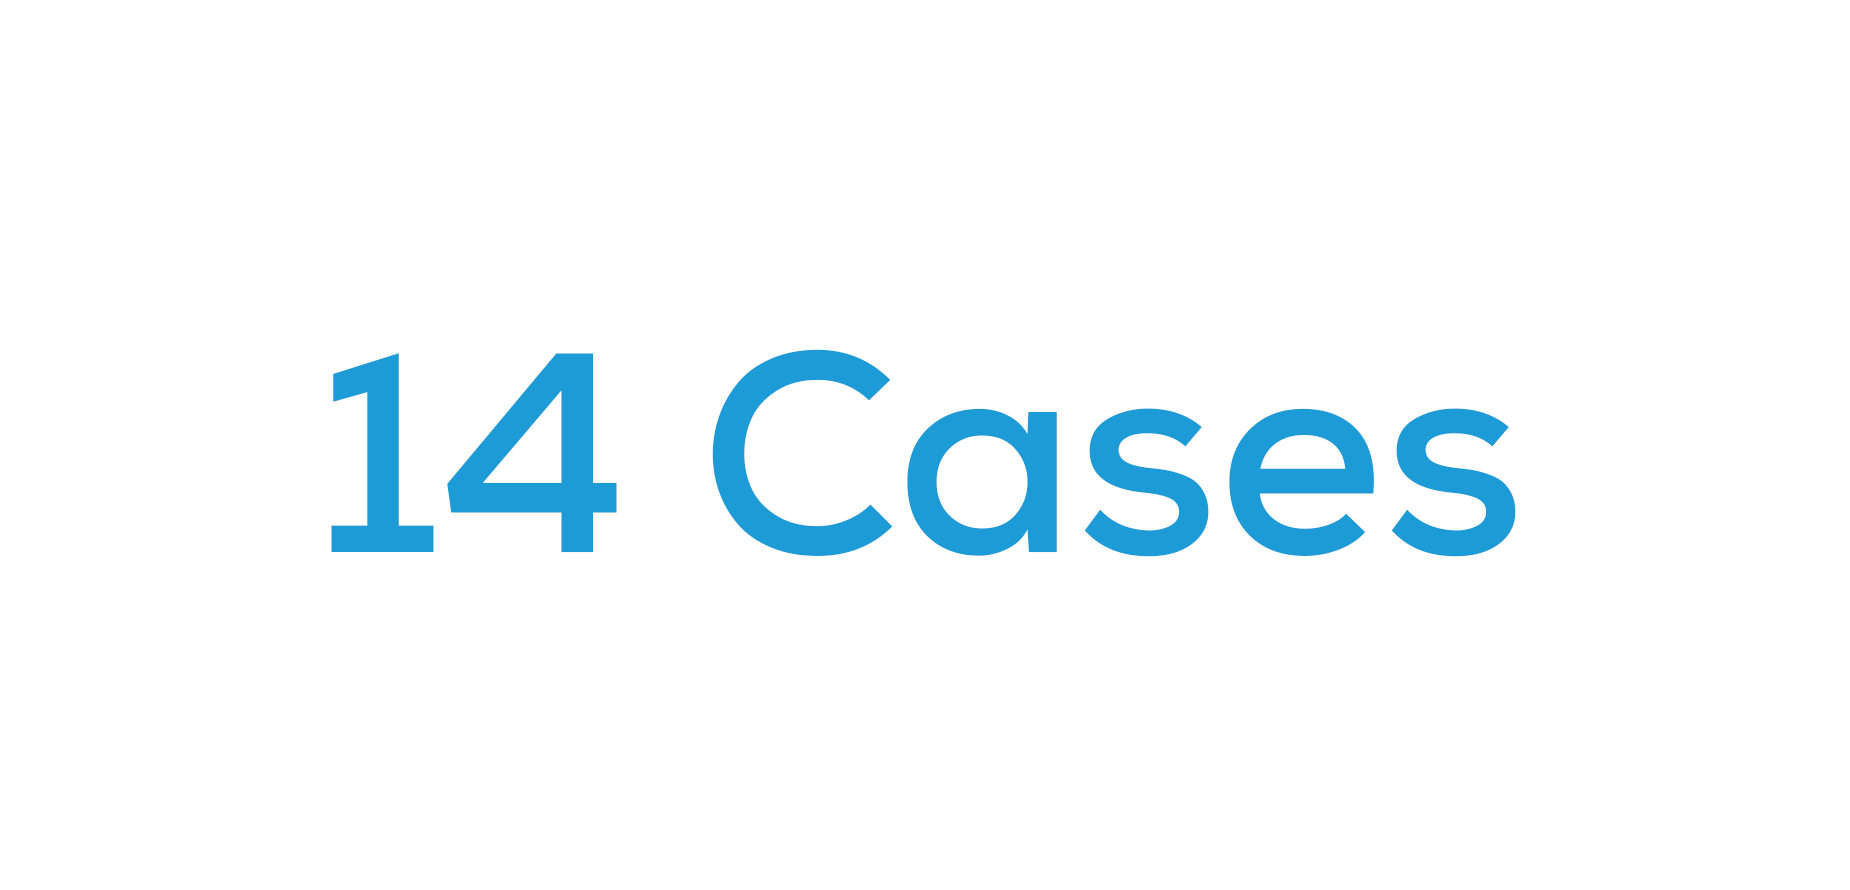 iPhone 14 Cases